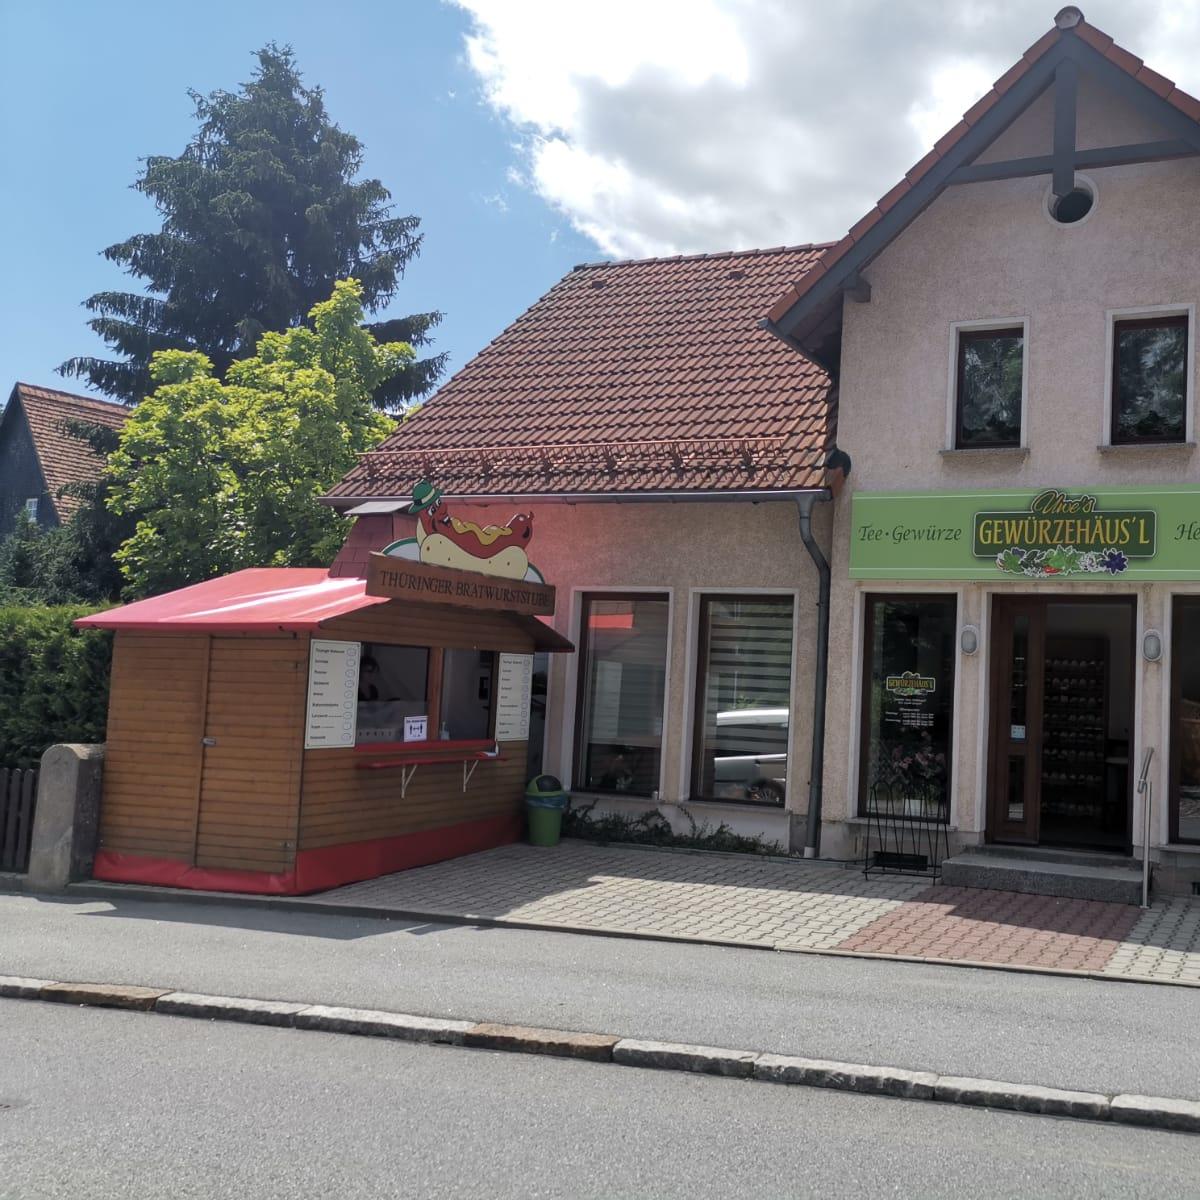 Restaurant "Thüringer Bratwurststube" in Ebersbach-Neugersdorf